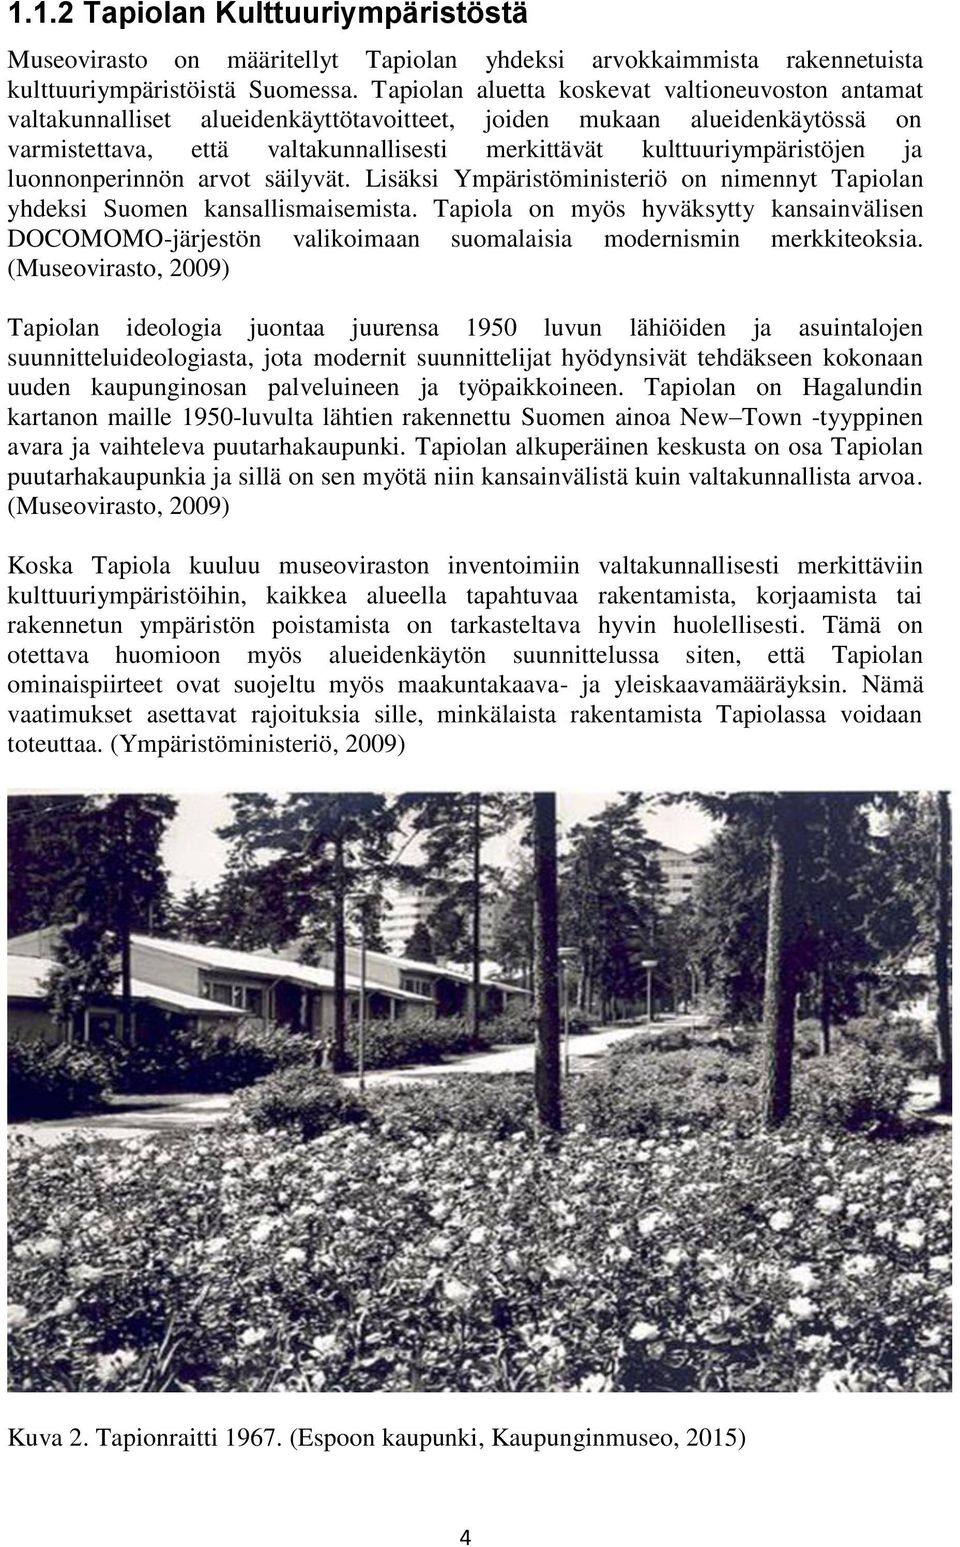 ja luonnonperinnön arvot säilyvät. Lisäksi Ympäristöministeriö on nimennyt Tapiolan yhdeksi Suomen kansallismaisemista.